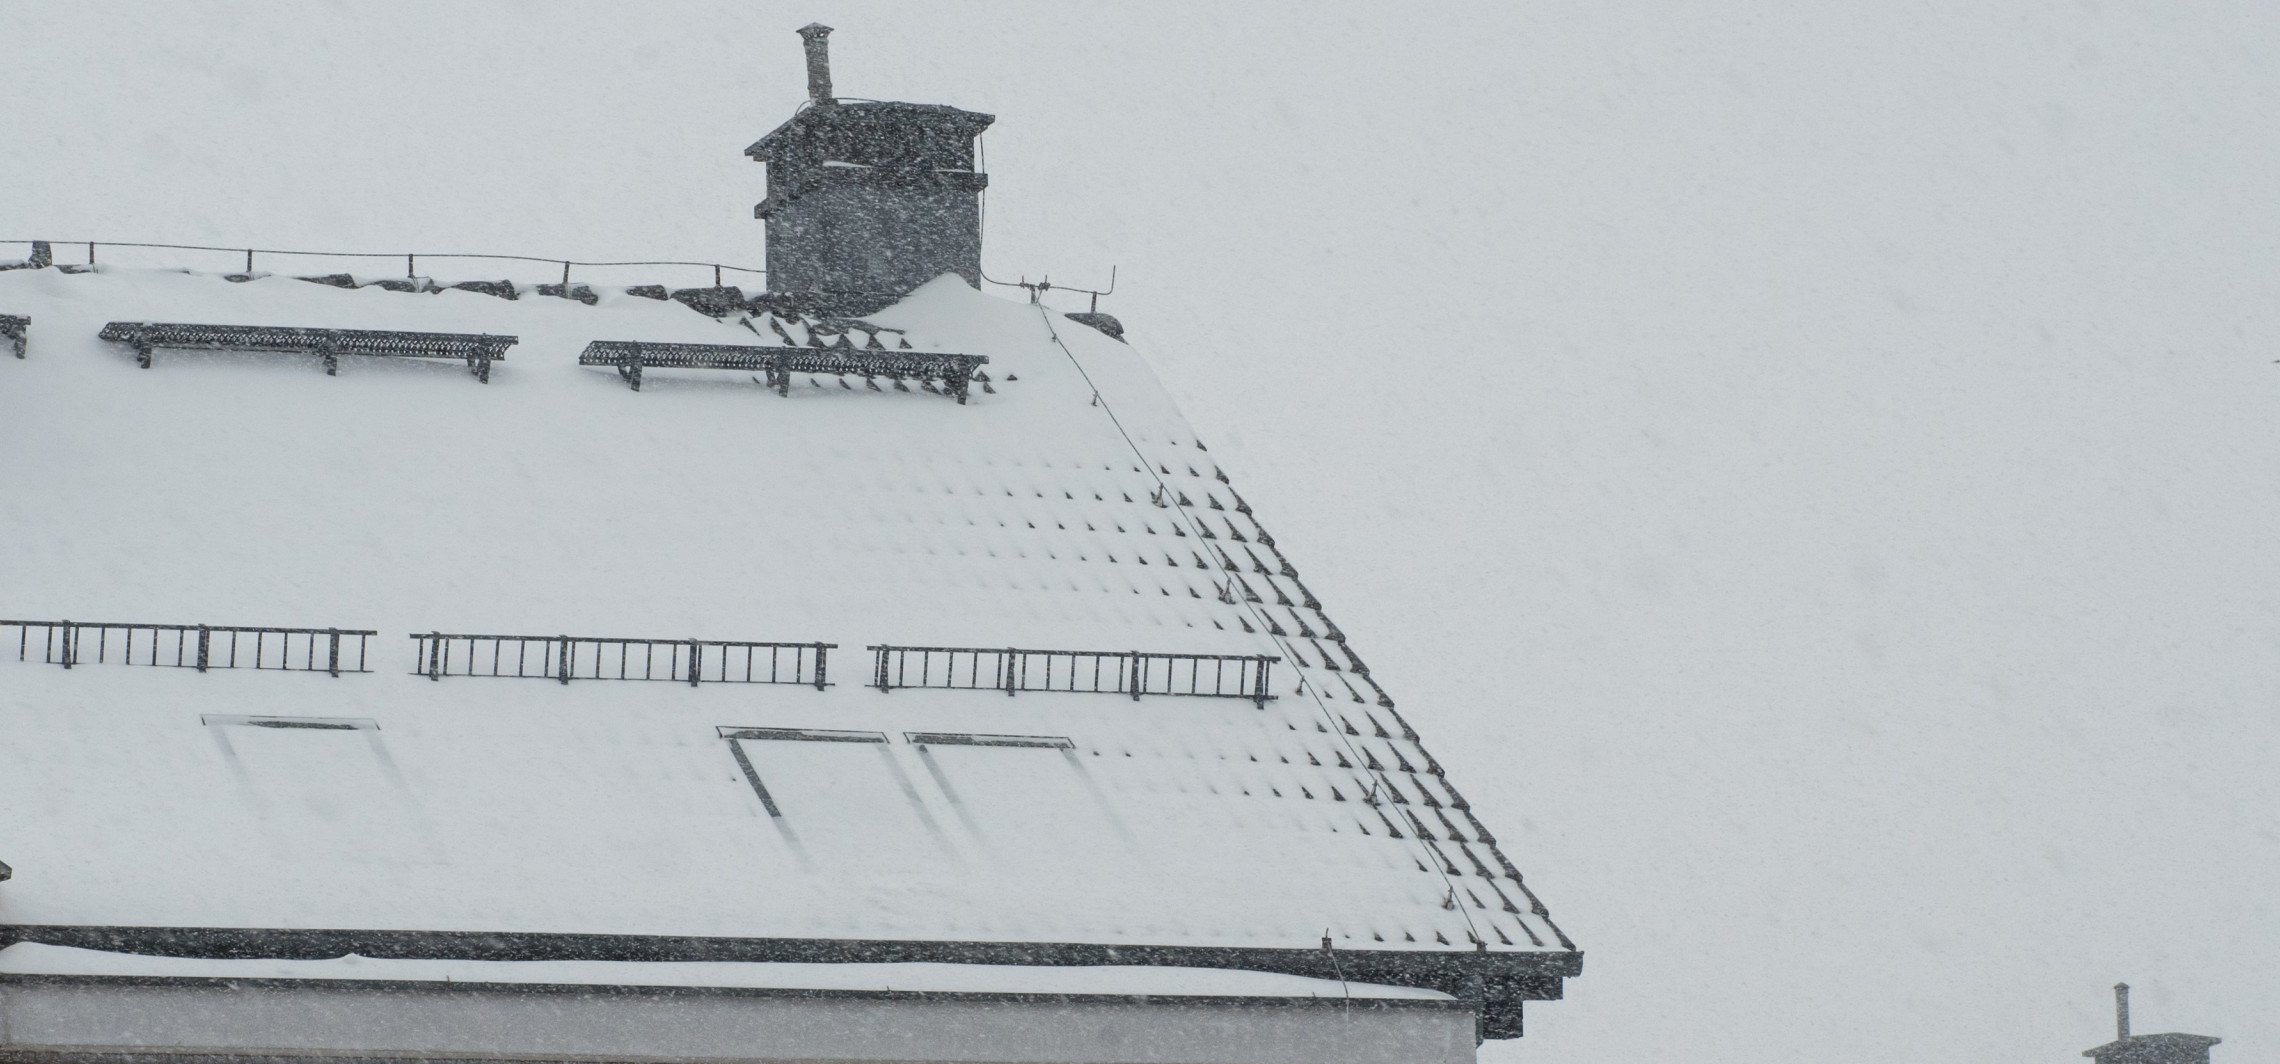 Inowrocław - Śnieg na dachu lub sople mogą być groźne